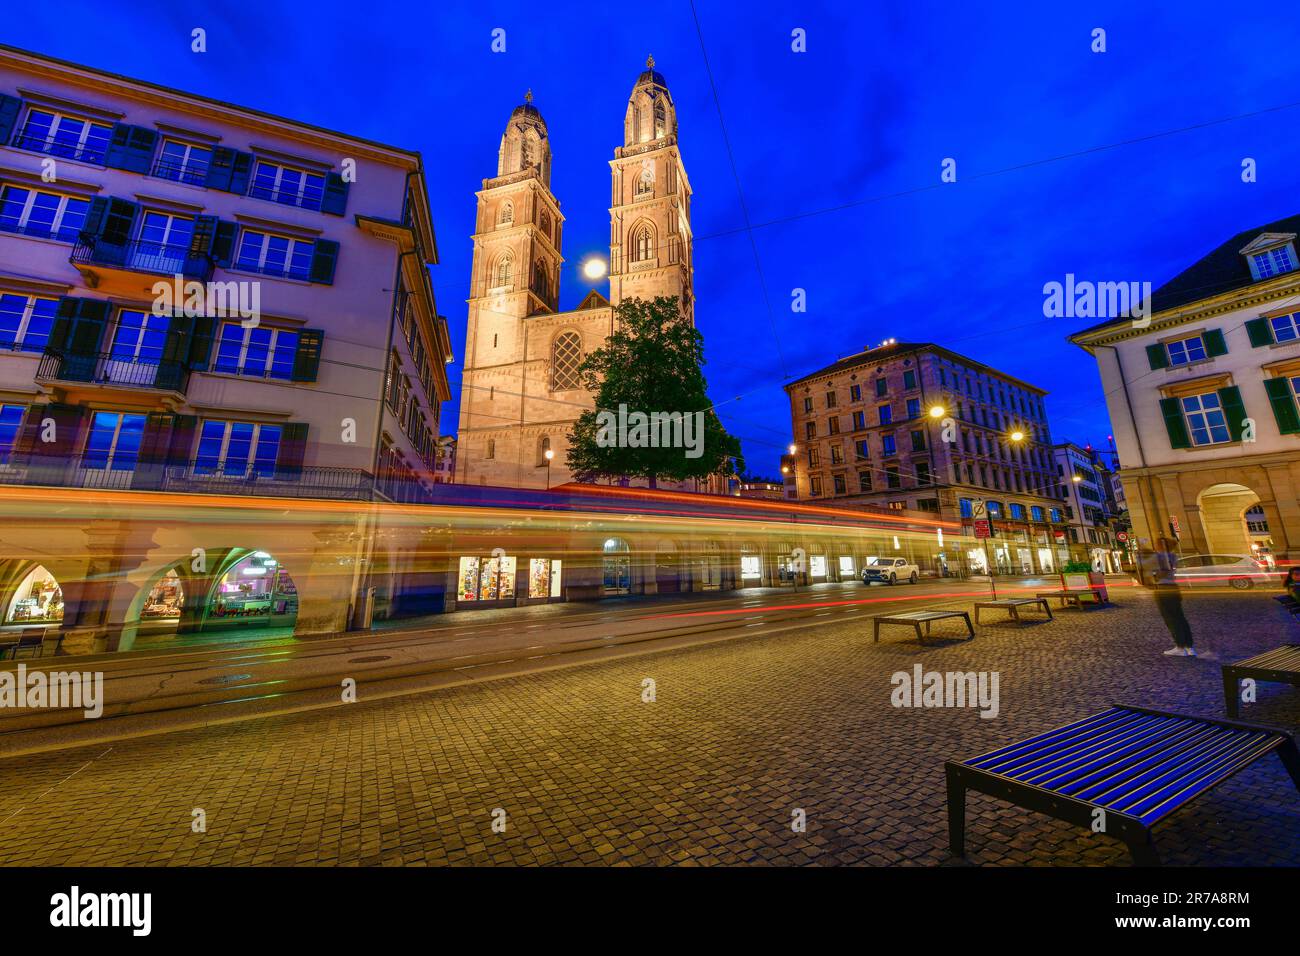 Belle vue nocturne du centre historique de Zurich, Suisse. Banque D'Images